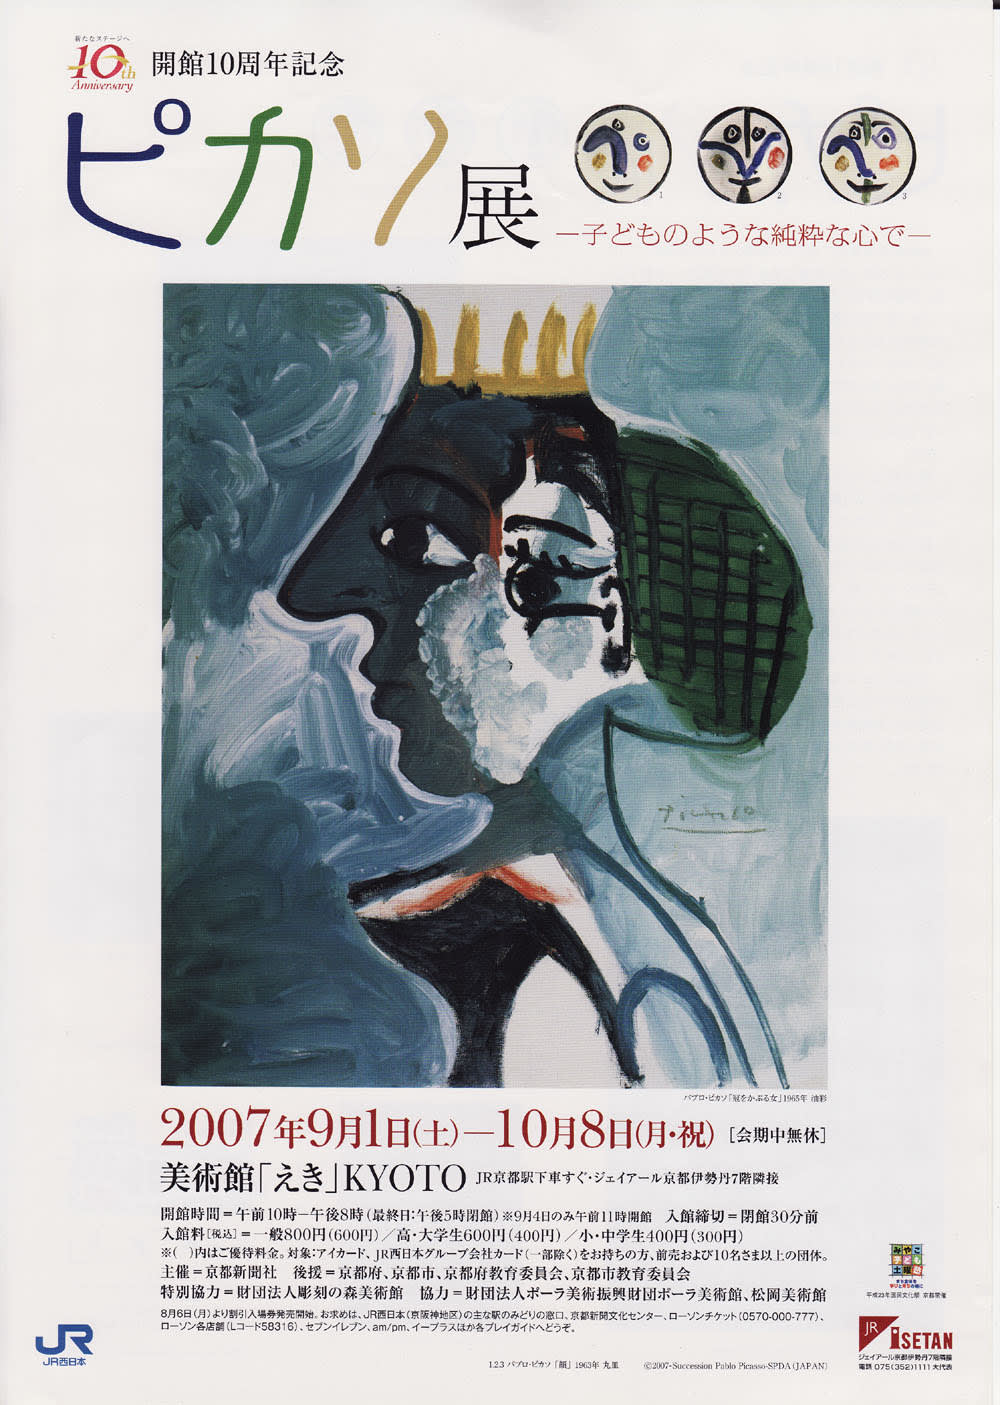 ピカソ展♪美術館「えき」KYOTO開館10周年記念 - 銅版画制作の日々